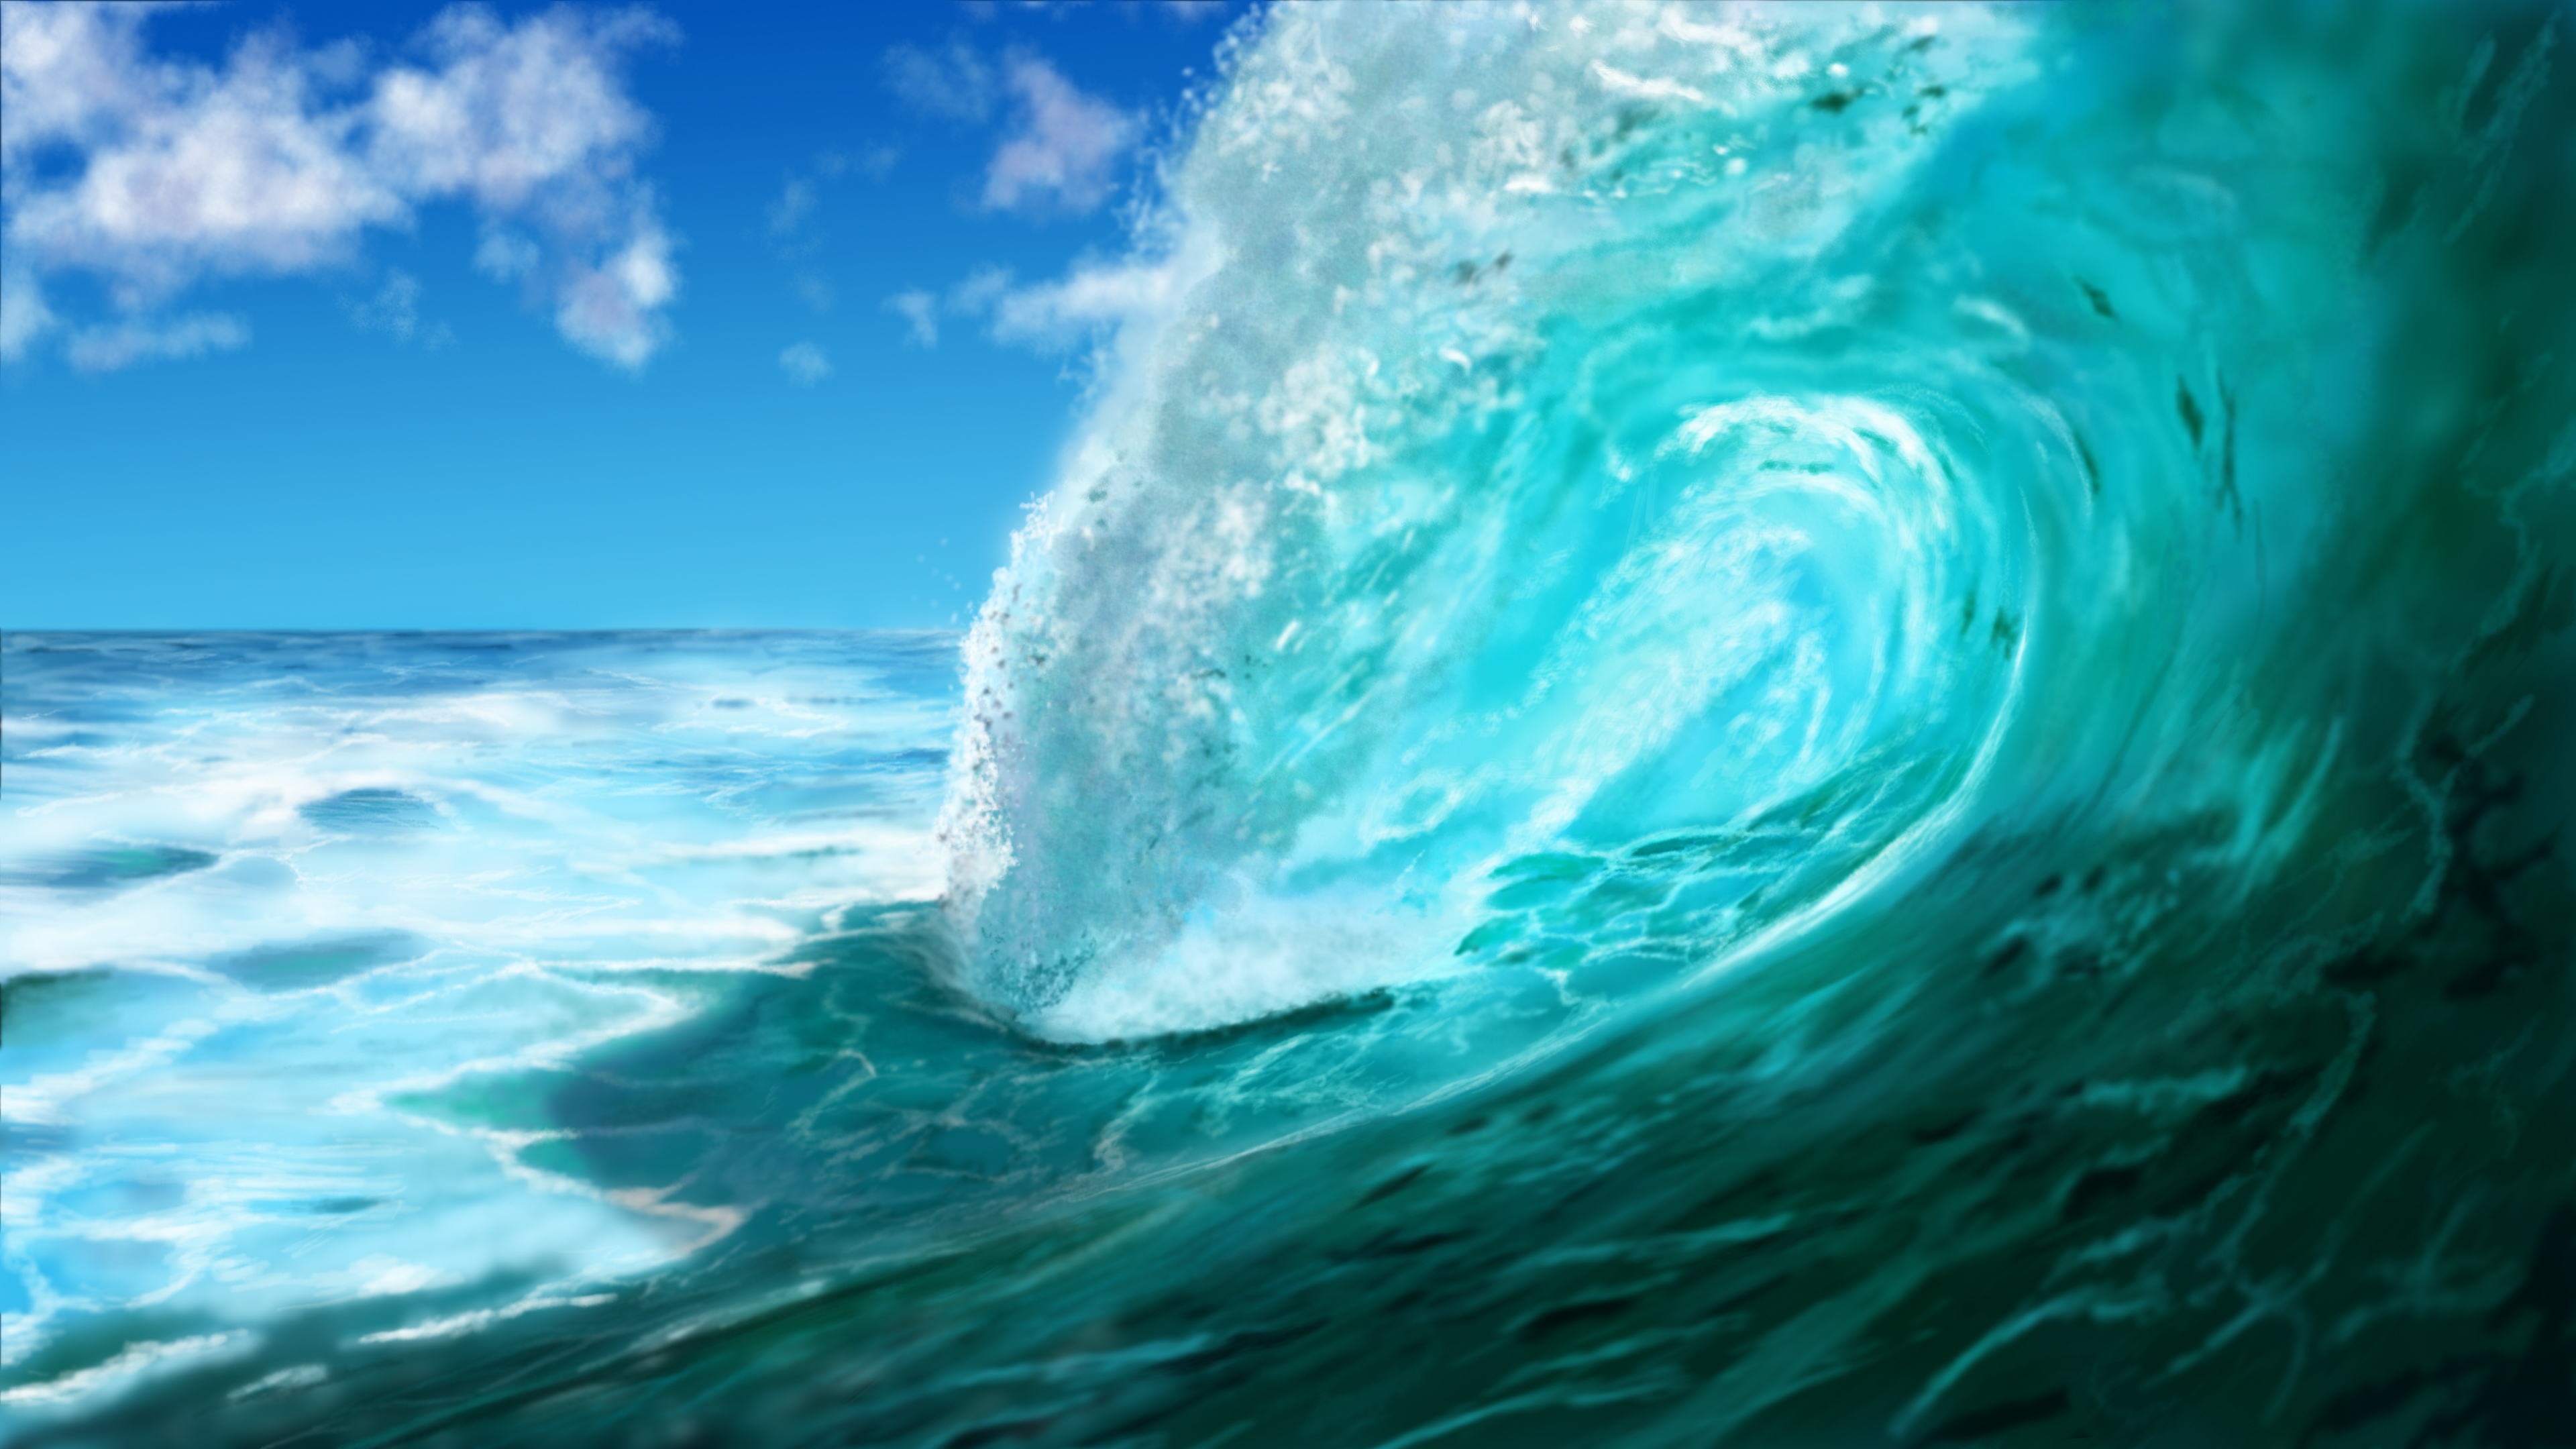 ... Digital Painting - Ocean Wave (Meereswoge, Welle) by dasflon